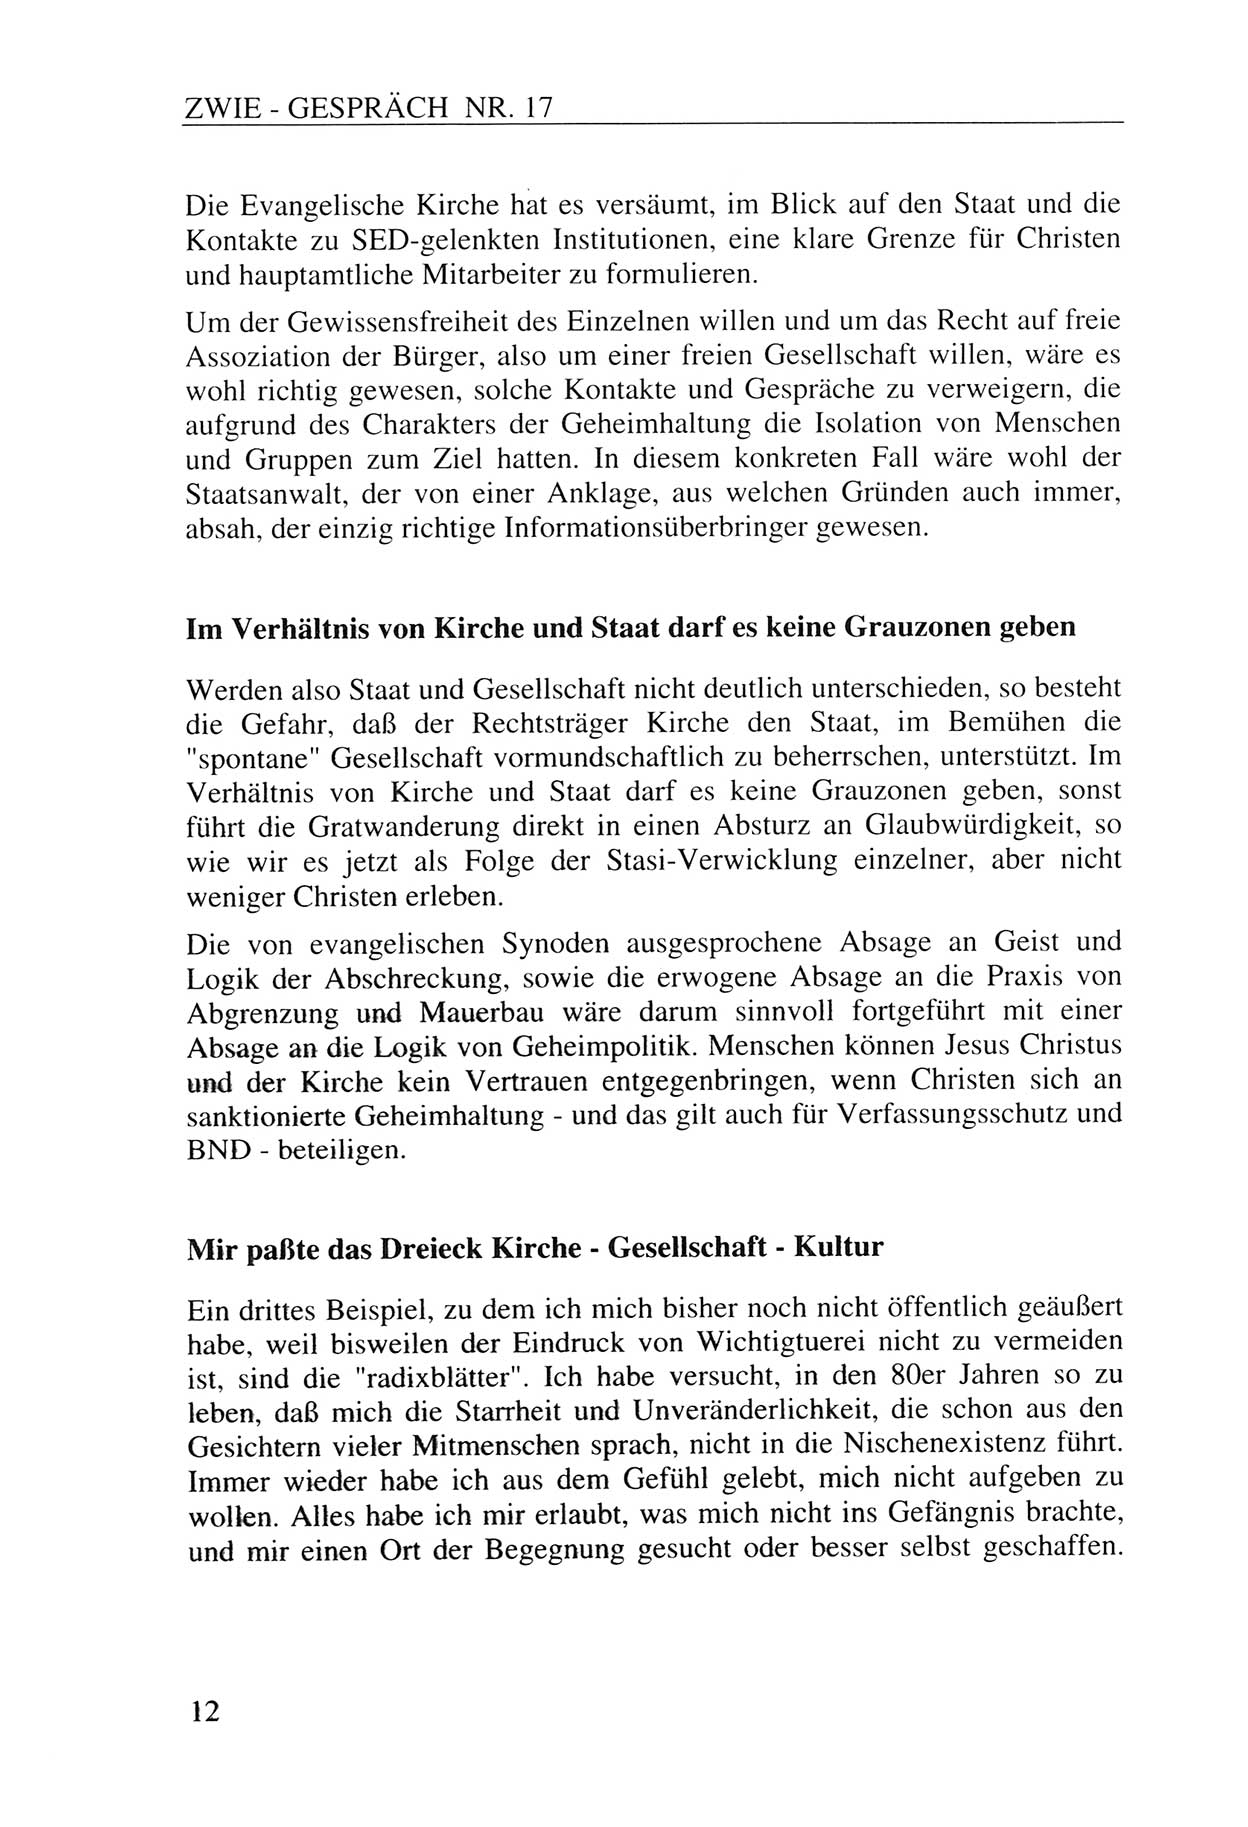 Zwie-Gespräch, Beiträge zur Aufarbeitung der Staatssicherheits-Vergangenheit [Deutsche Demokratische Republik (DDR)], Ausgabe Nr. 17, Berlin 1993, Seite 12 (Zwie-Gespr. Ausg. 17 1993, S. 12)